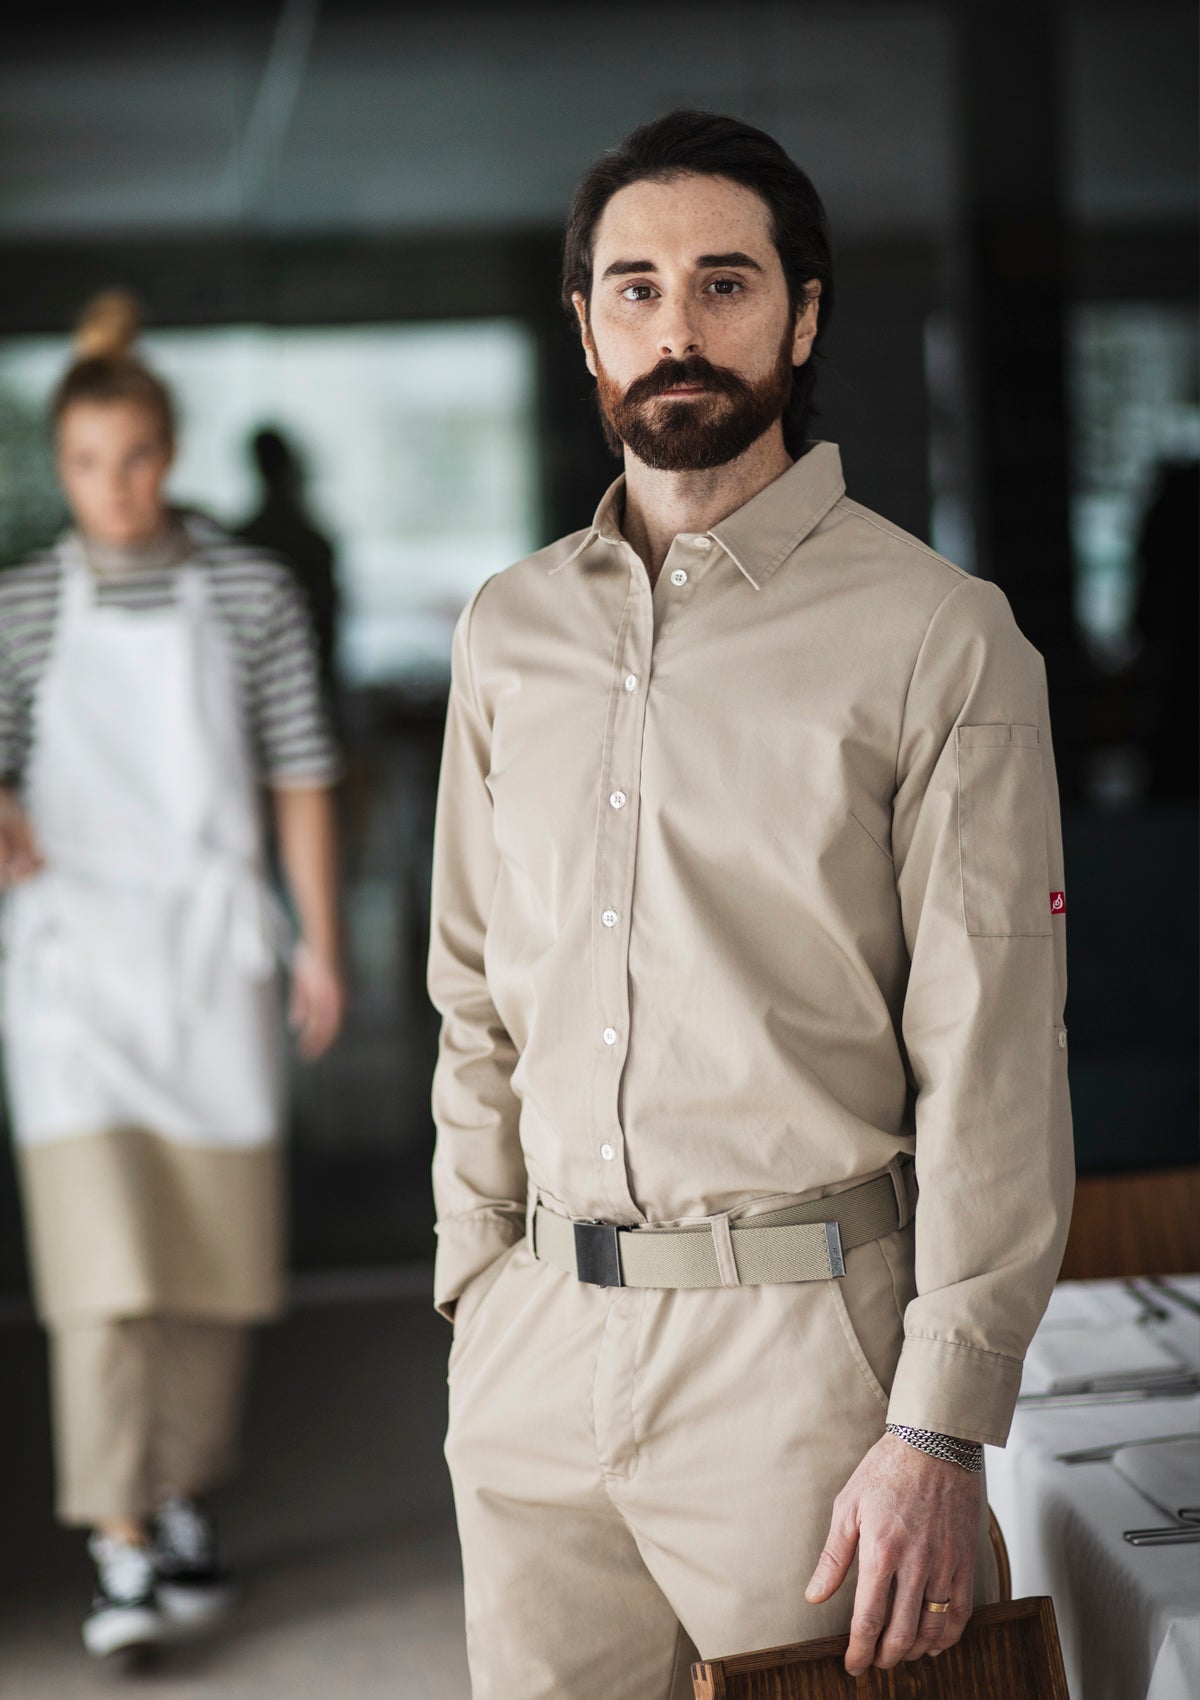 Men's Elegant Shirt in Normal Fit Long Sleeves